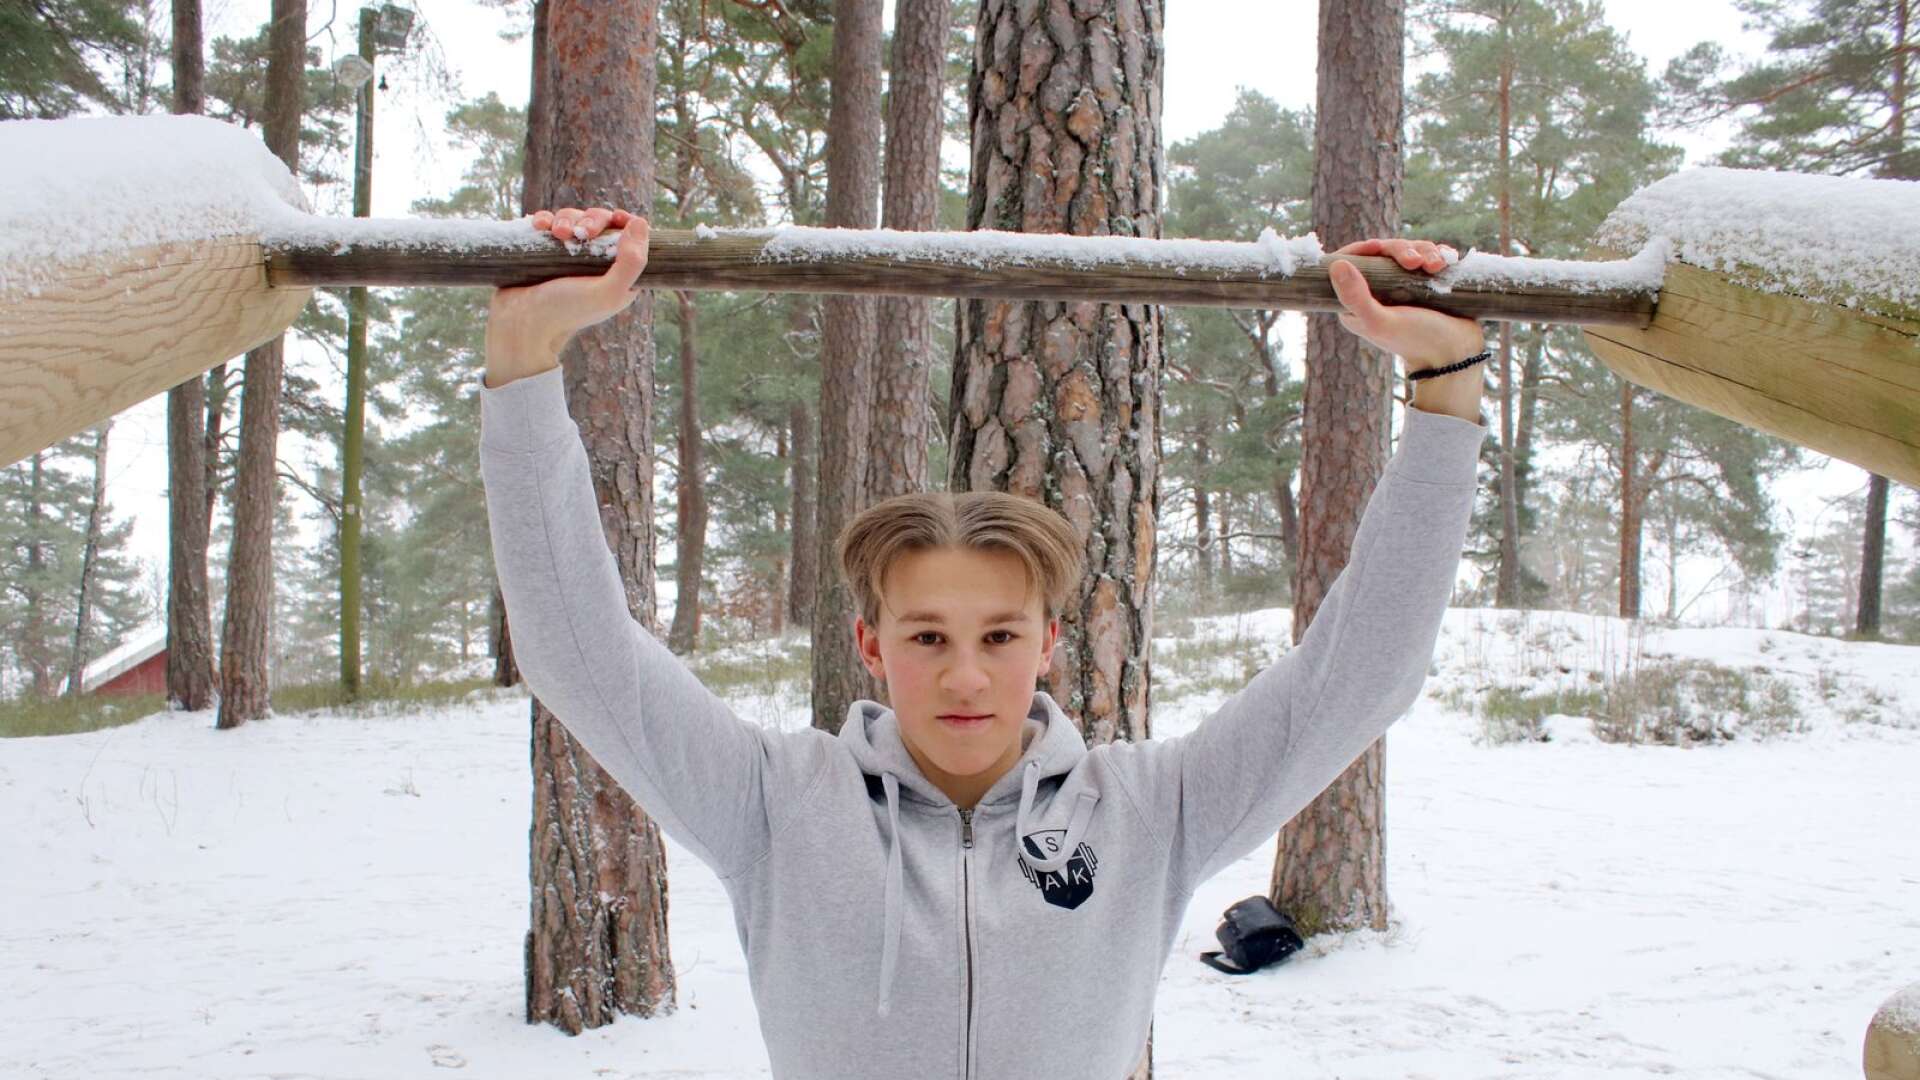 Oscar Svanström från Åmål siktar mot JSM-guld i styrkelyft 2021.